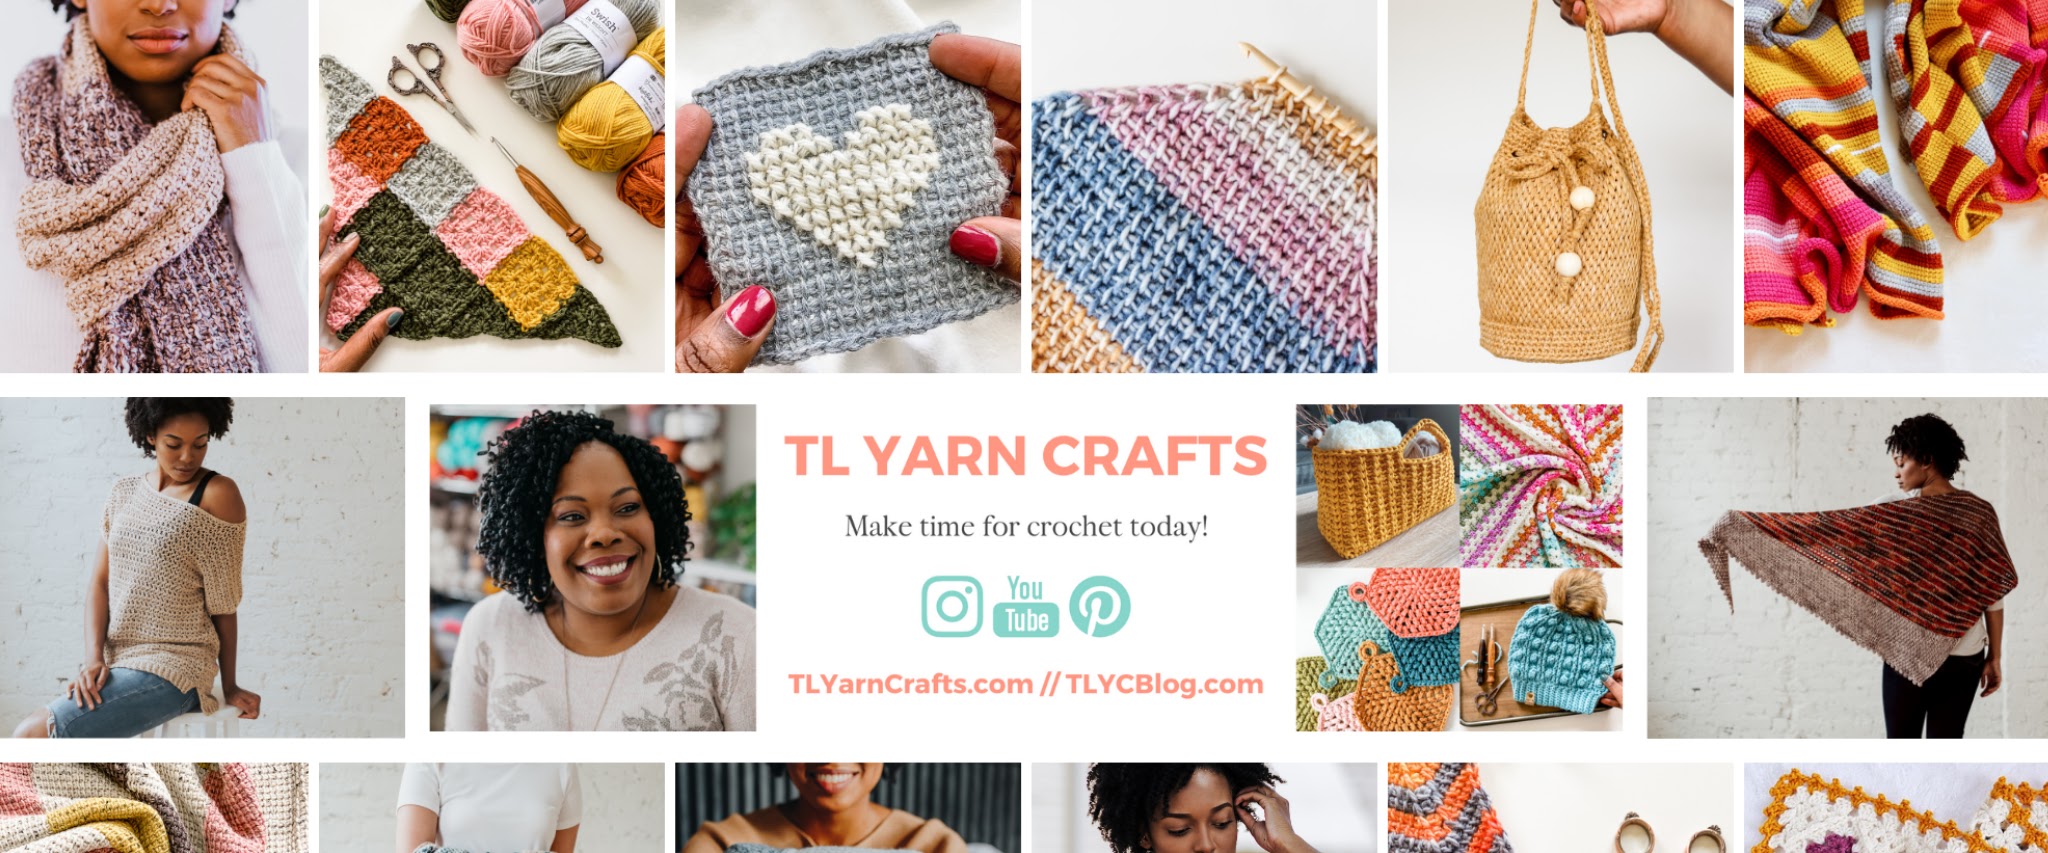 TL Yarn Crafts